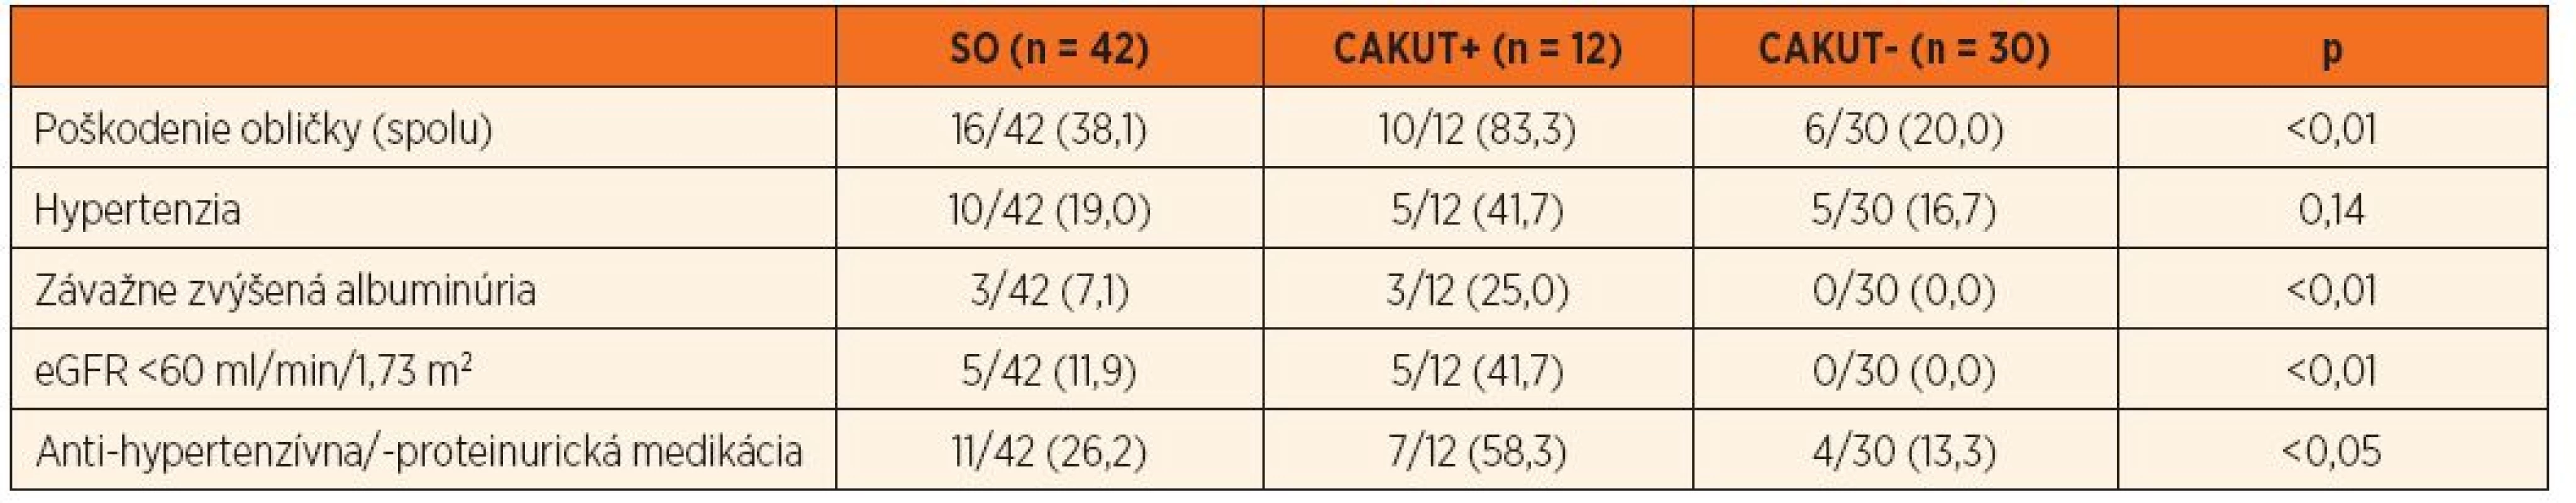 Kumulatívna incidencia obličkového „poškodenia“ u pacientov so SO (spolu a podľa CAKUT+/-).